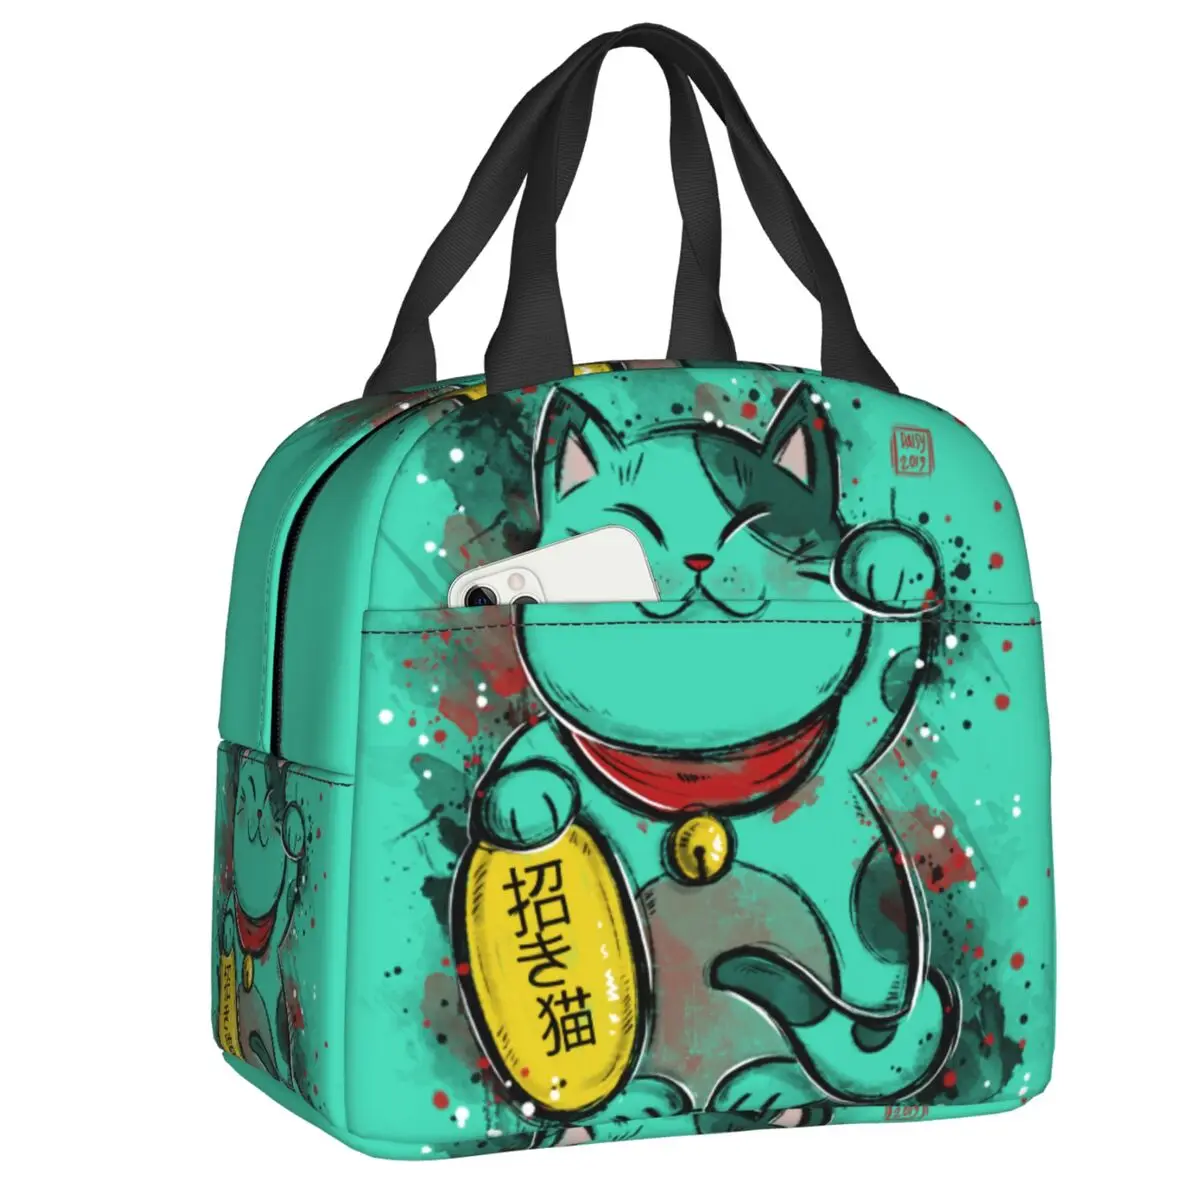 

Kawaii Манеки Neko Изолированные сумки для обеда для женщин счастливый кот портативный термальный охладитель бэнто коробка для работы школы путешествия